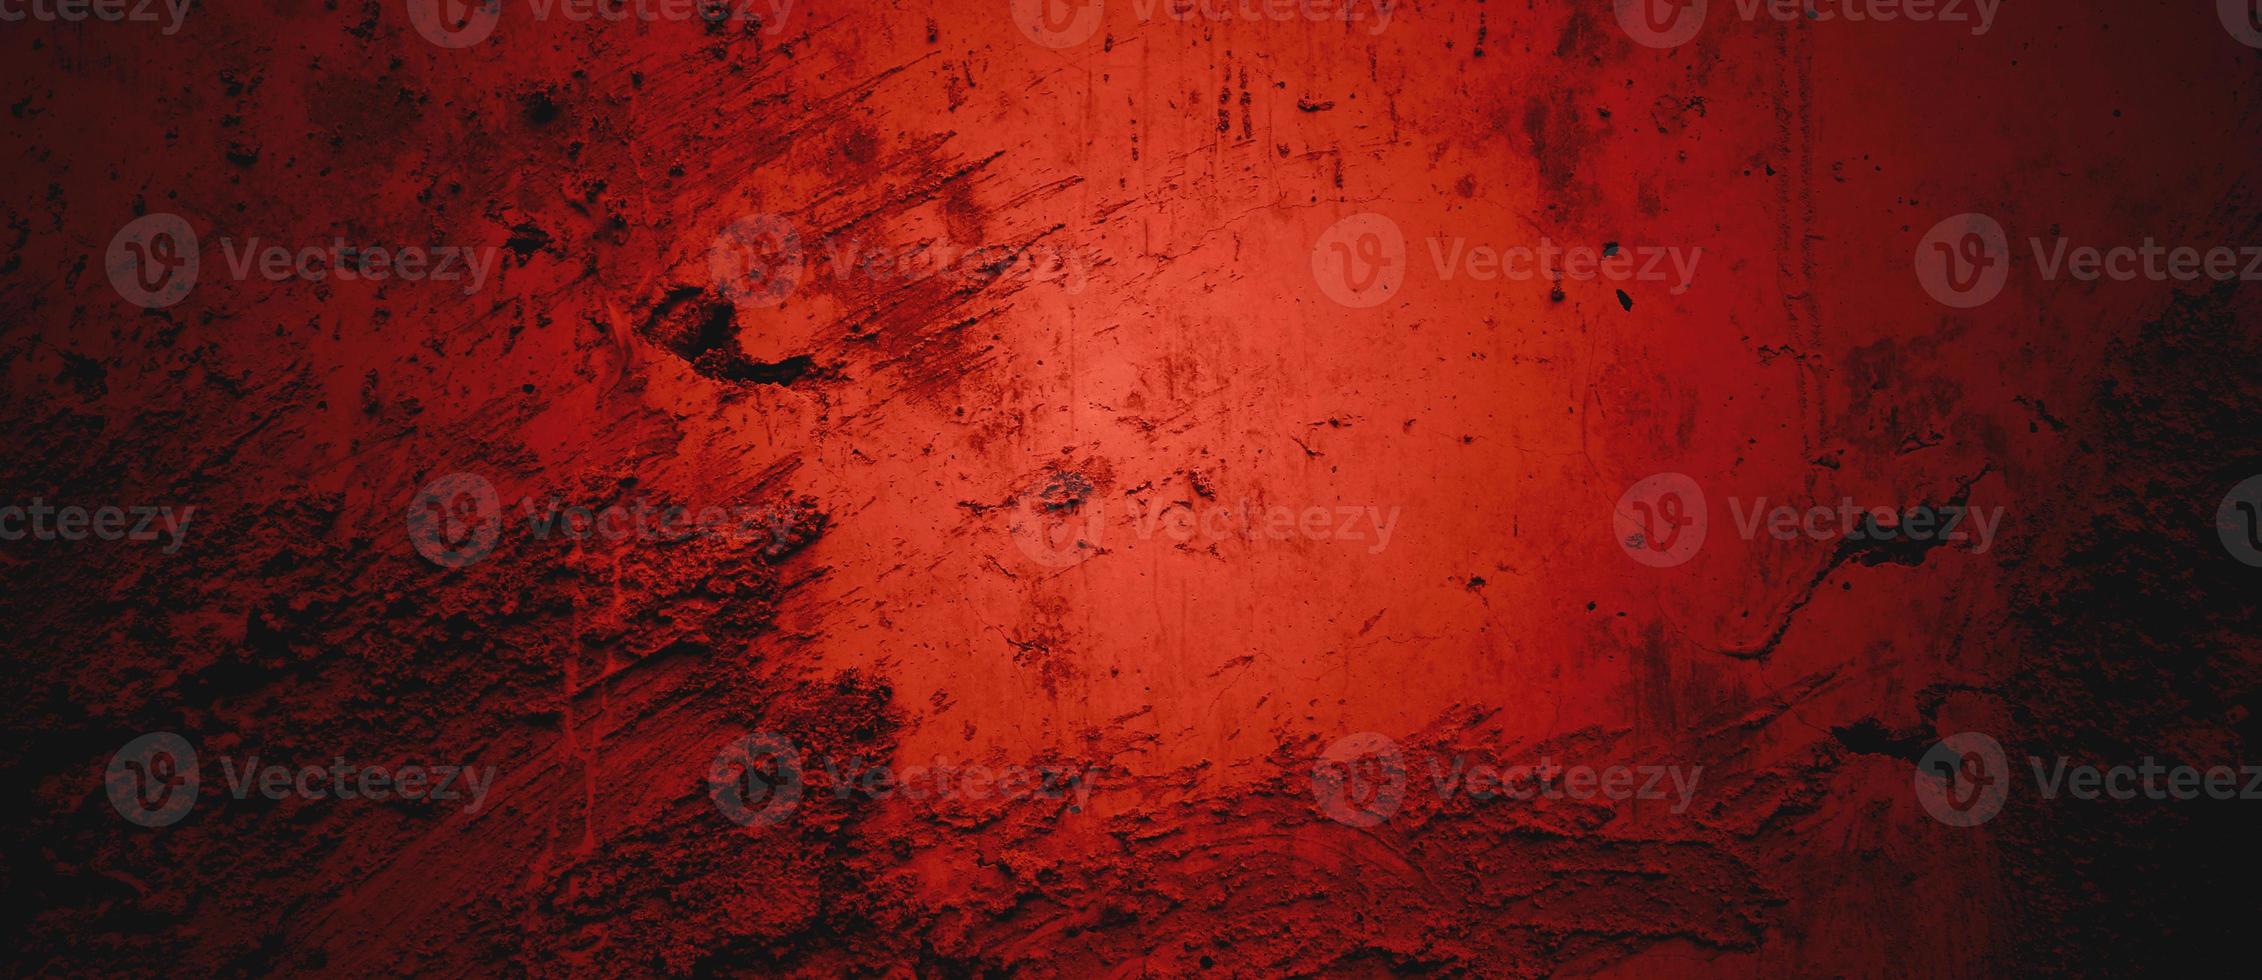 sfondo di struttura della parete rosso scuro. sfondo di halloween spaventoso. sfondo grunge rosso e nero con graffi foto